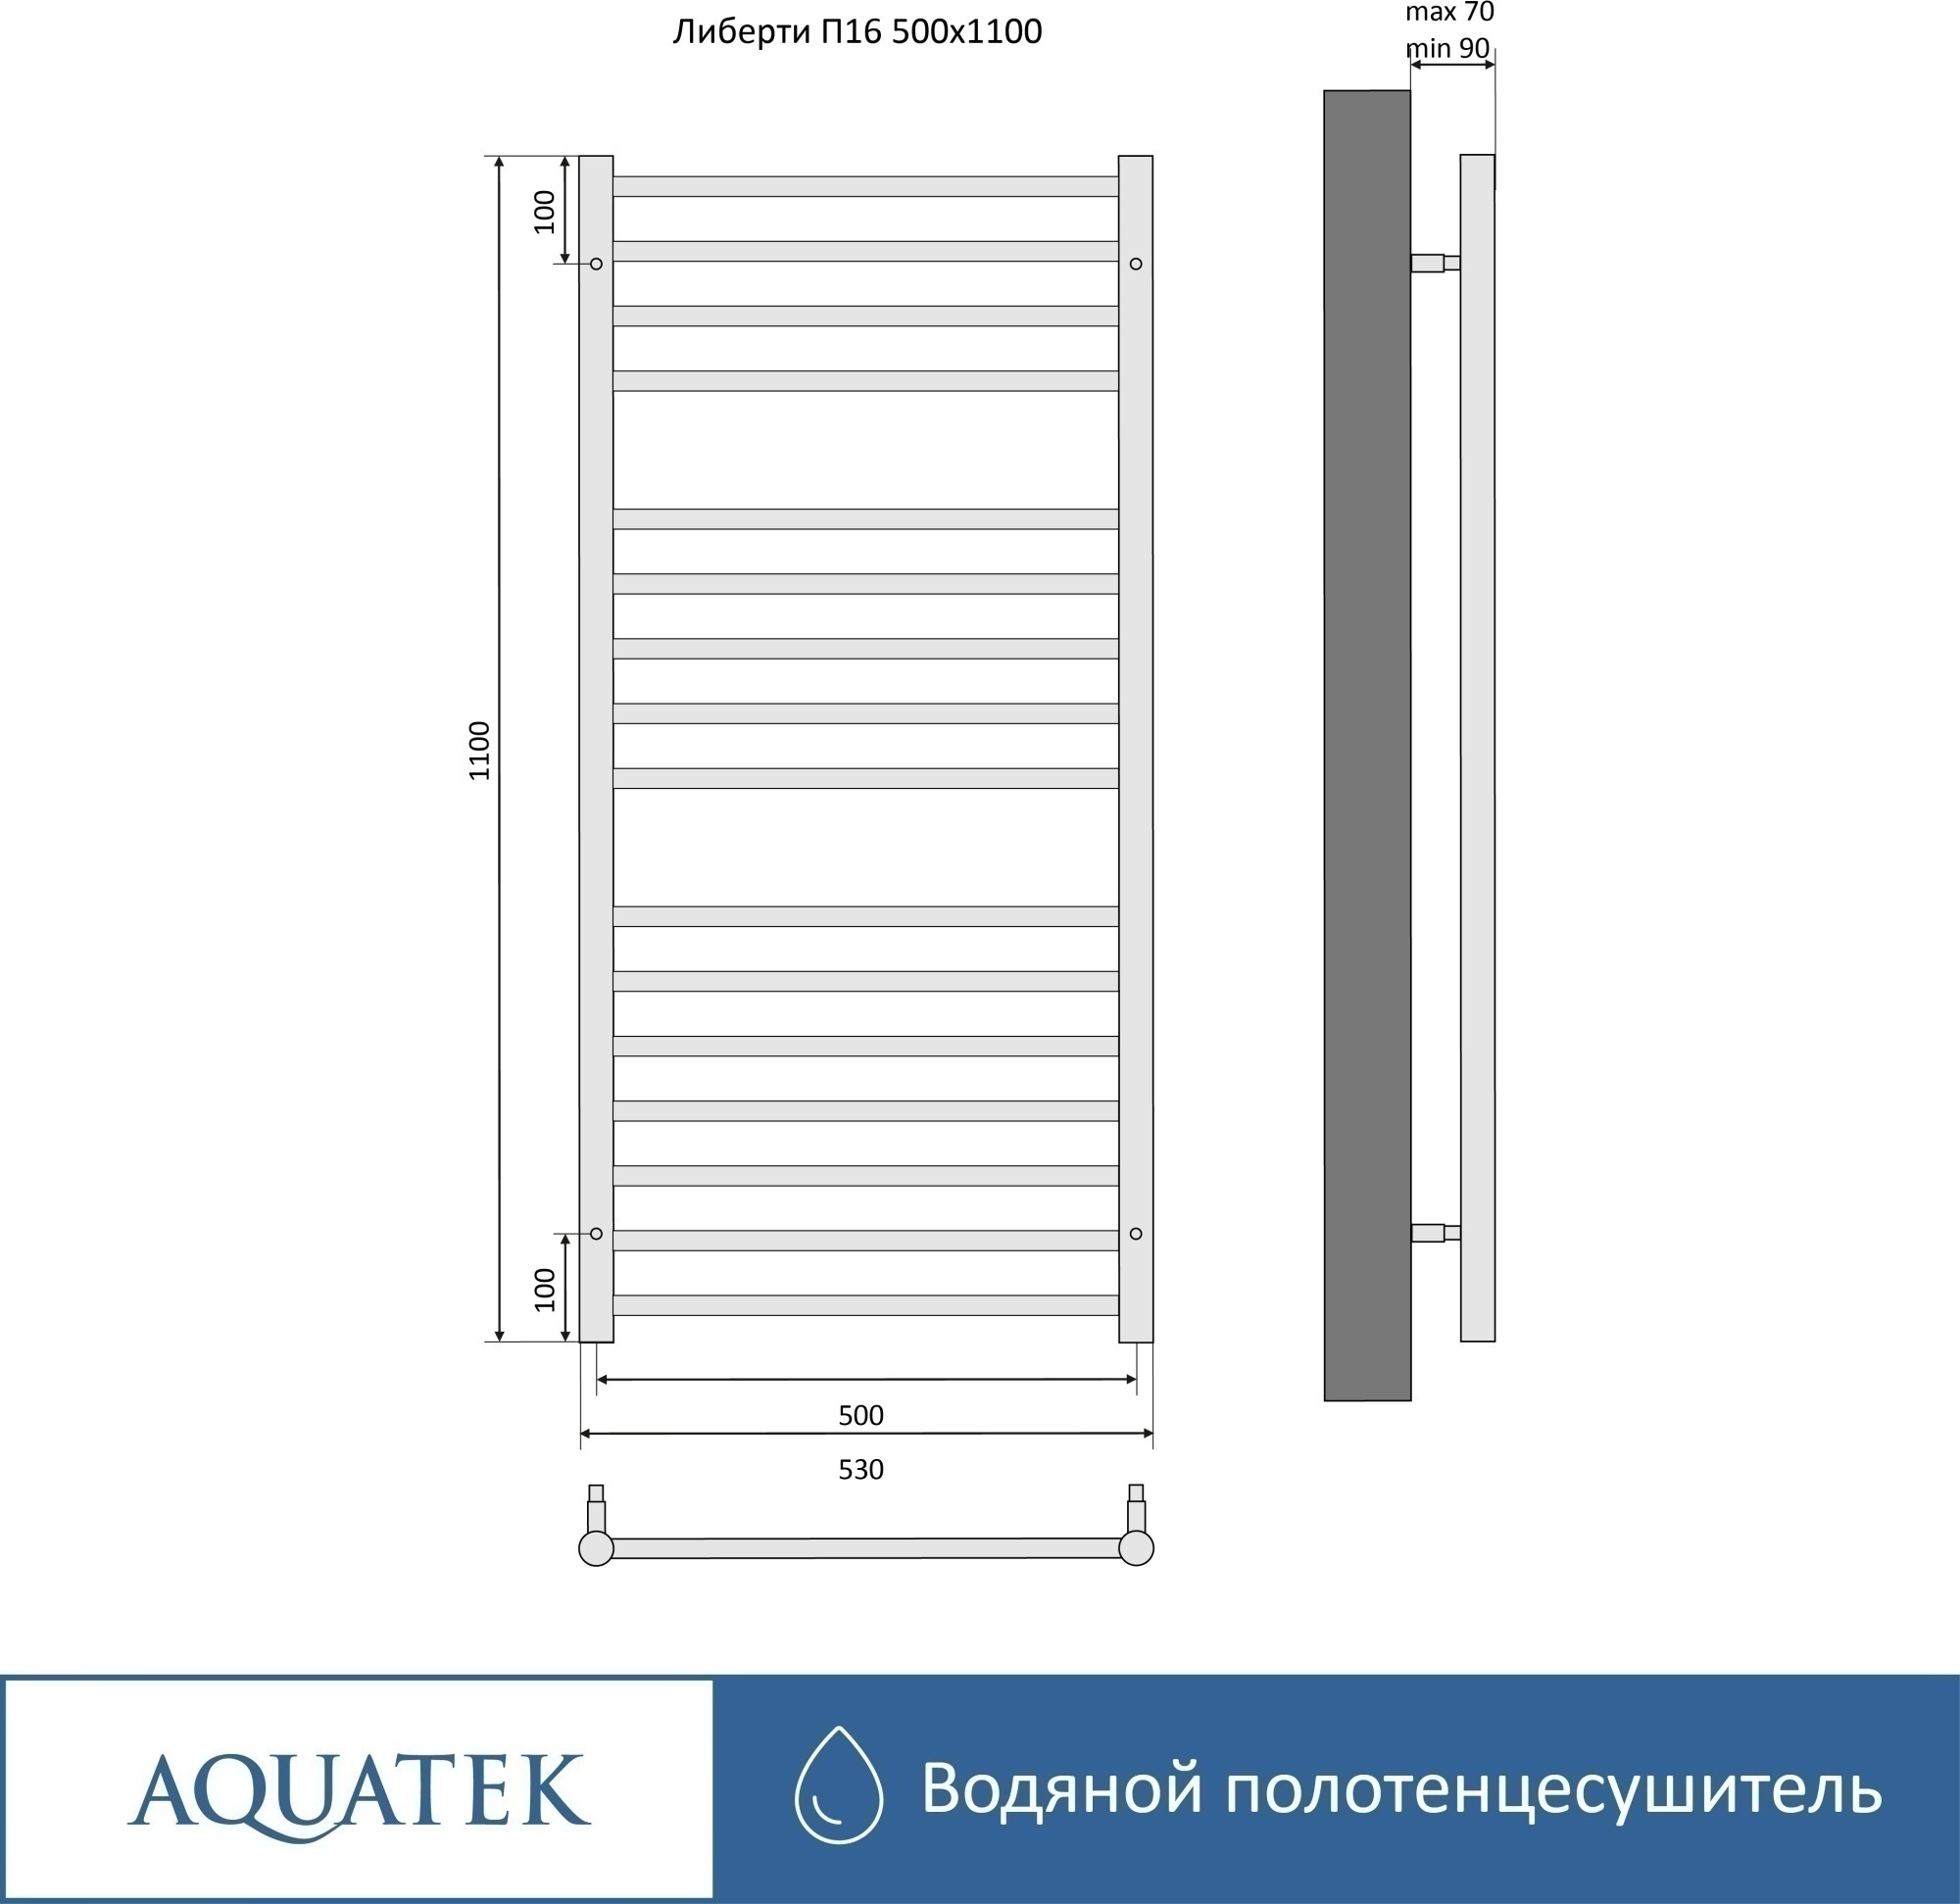 Полотенцесушитель водяной Aquatek Либерти П16 50x110 AQ RR1610CH